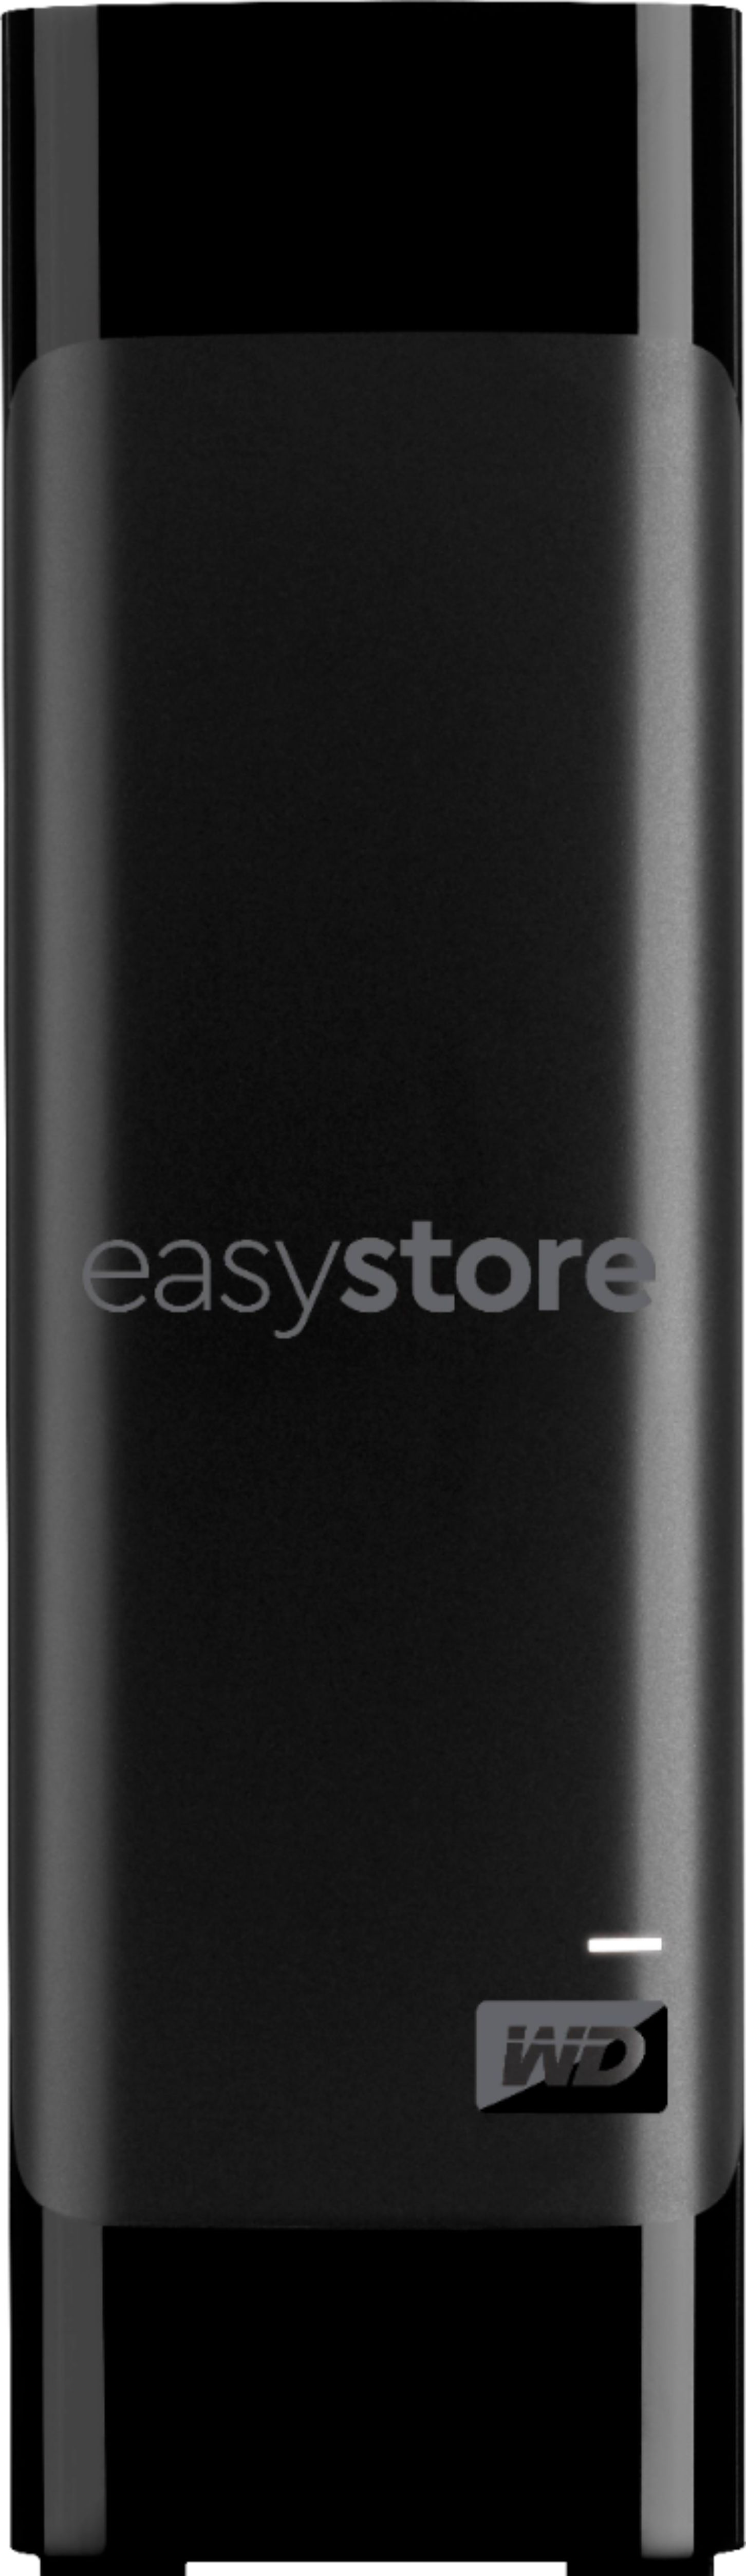 musikalsk lufthavn sværge WD easystore 12TB External USB 3.0 Hard Drive Black WDBAMA0120HBK-NESN -  Best Buy